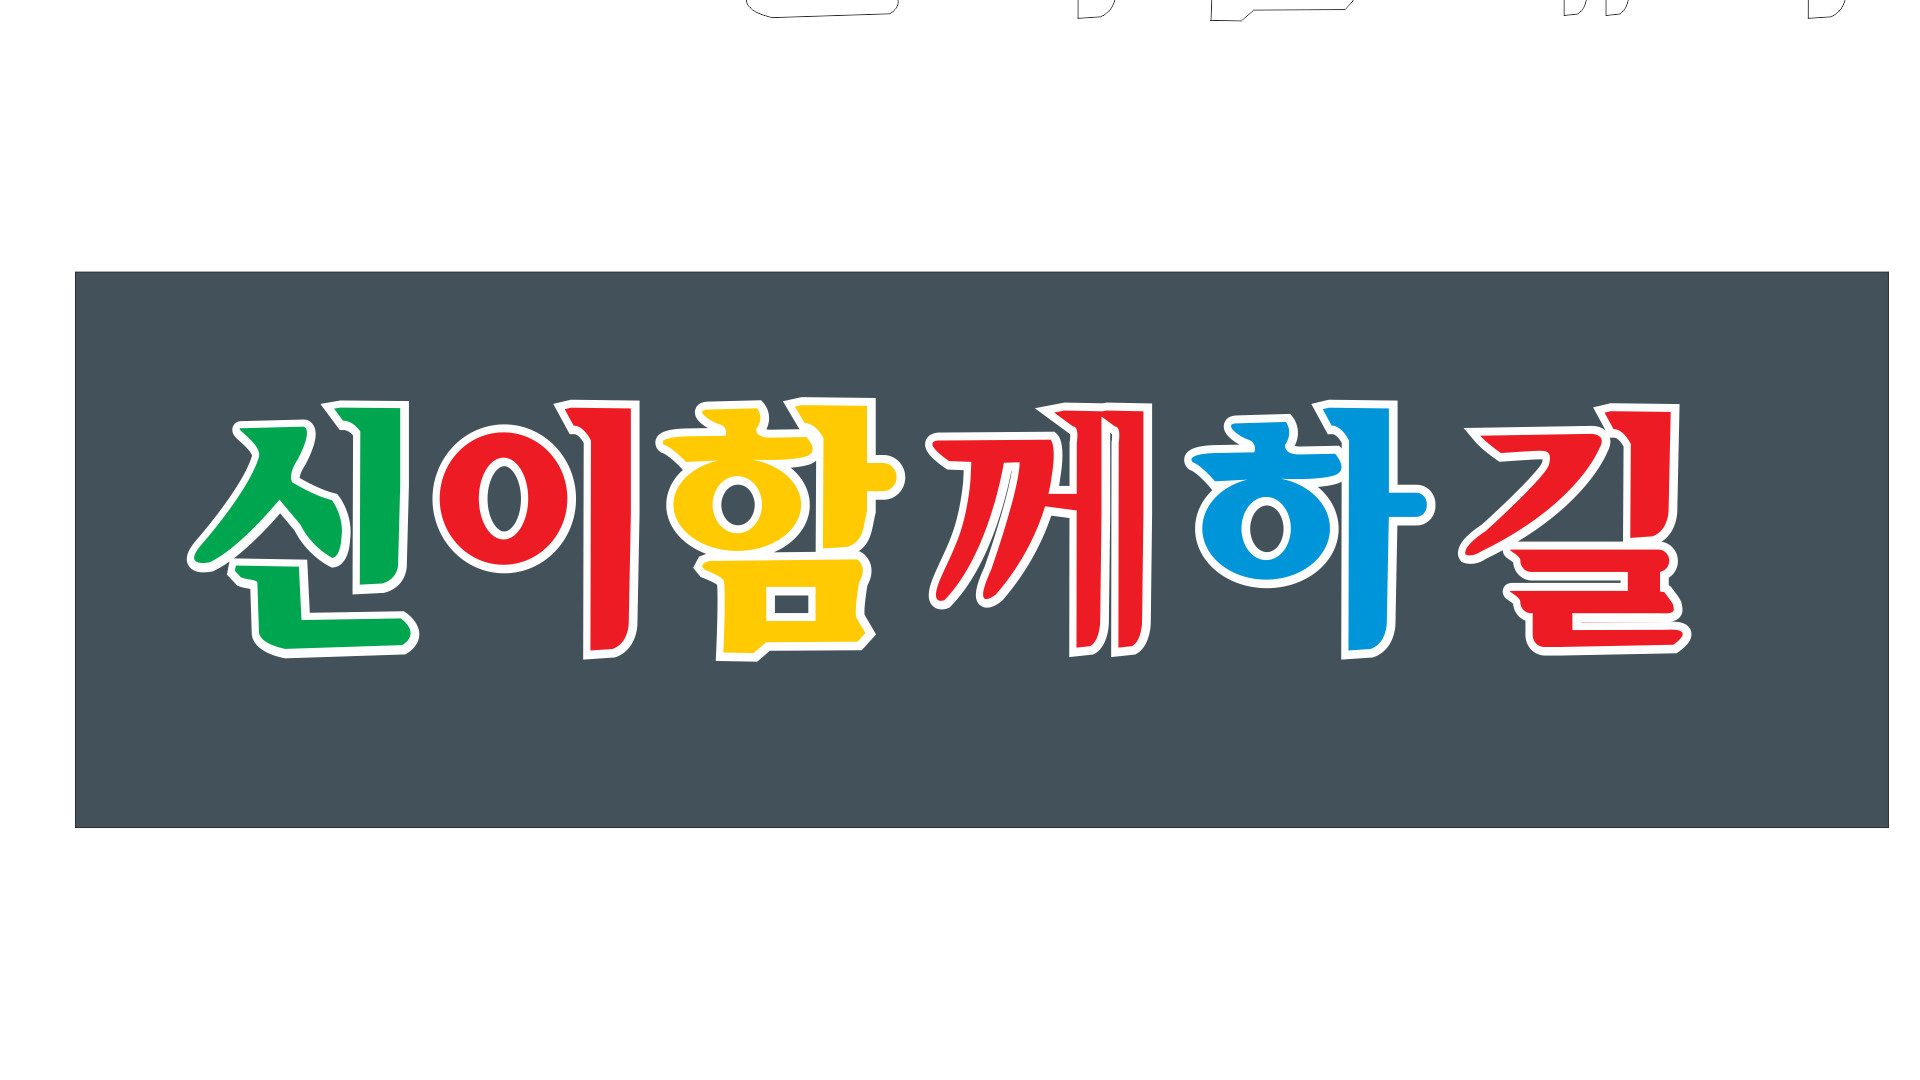 Chữ Hàn Quốc không chỉ đem lại giá trị thẩm mỹ mà còn có tính ứng dụng cao trong đời sống hàng ngày. Với phản quang và tem dán xe tải, bạn có thể bảo vệ sản phẩm của mình một cách hiệu quả. Hãy khám phá hình ảnh độc đáo của chữ Hàn Quốc trên Lazada.vn và tận hưởng trọn vẹn những tiện ích mà nó mang lại.